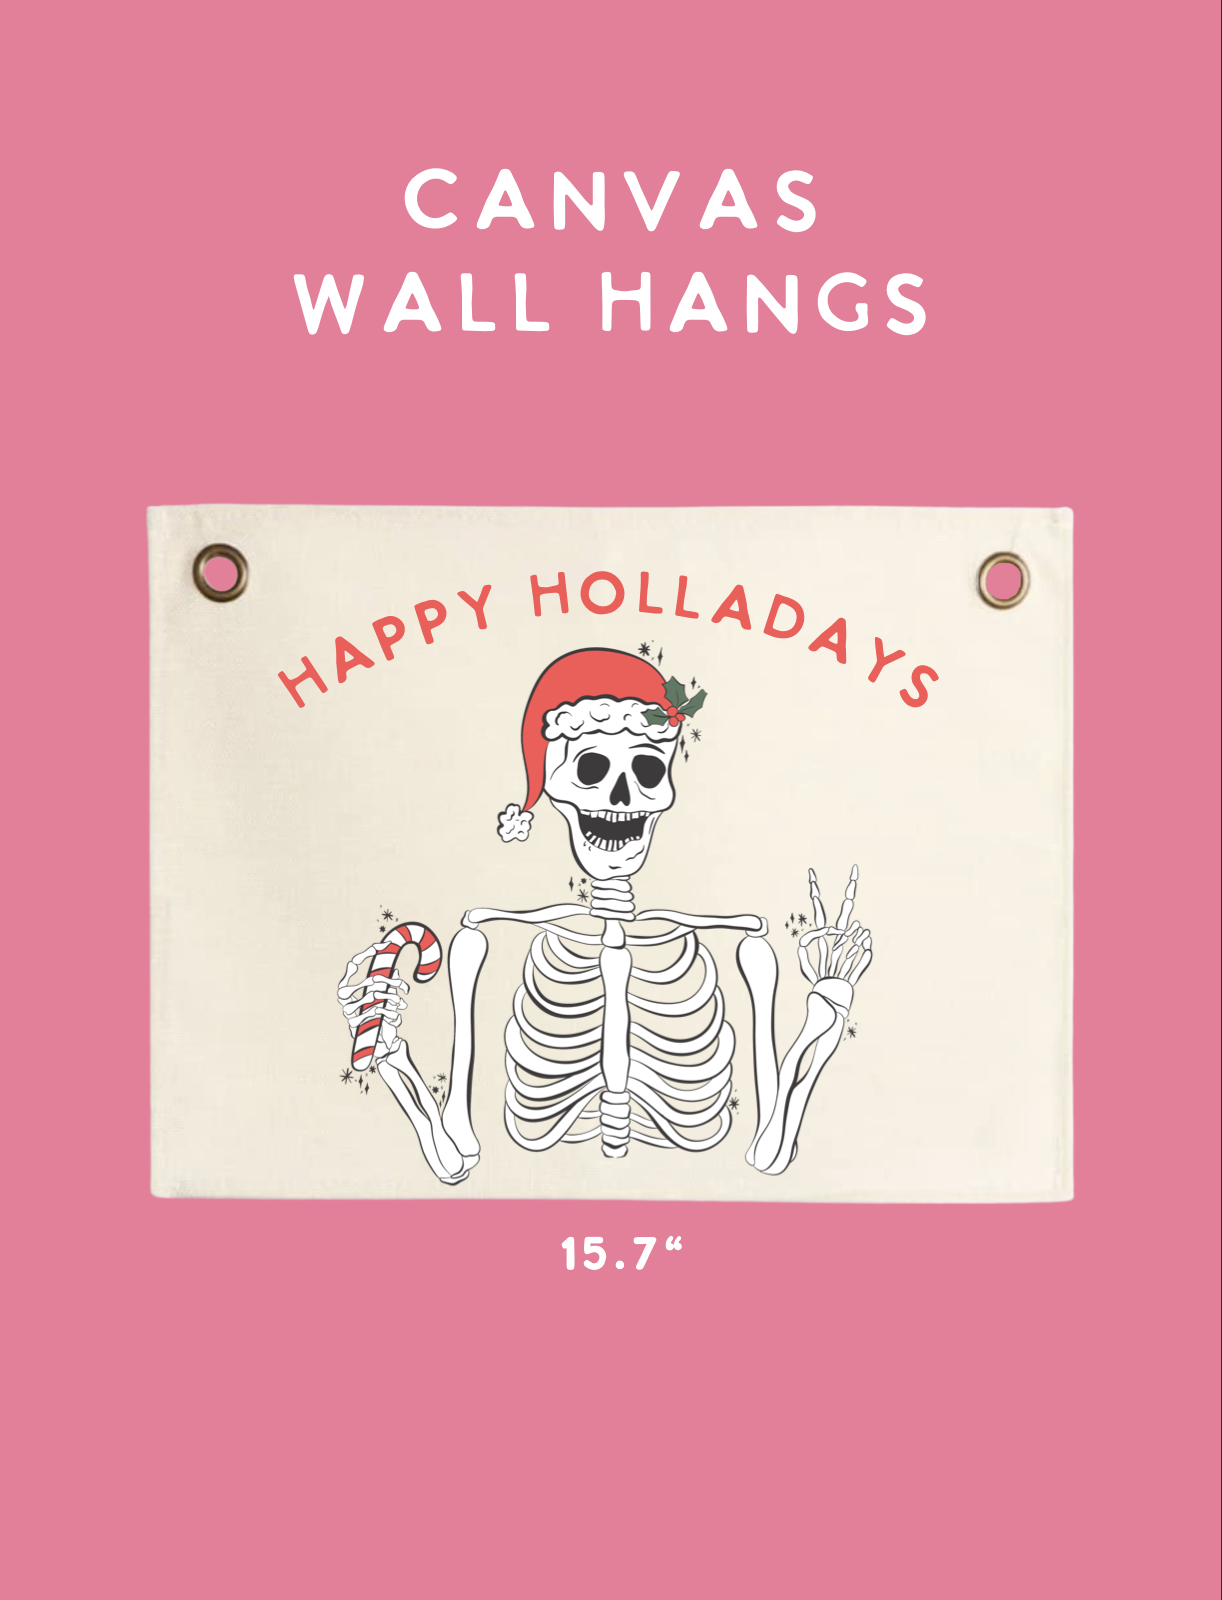 Happy holladays wall hang